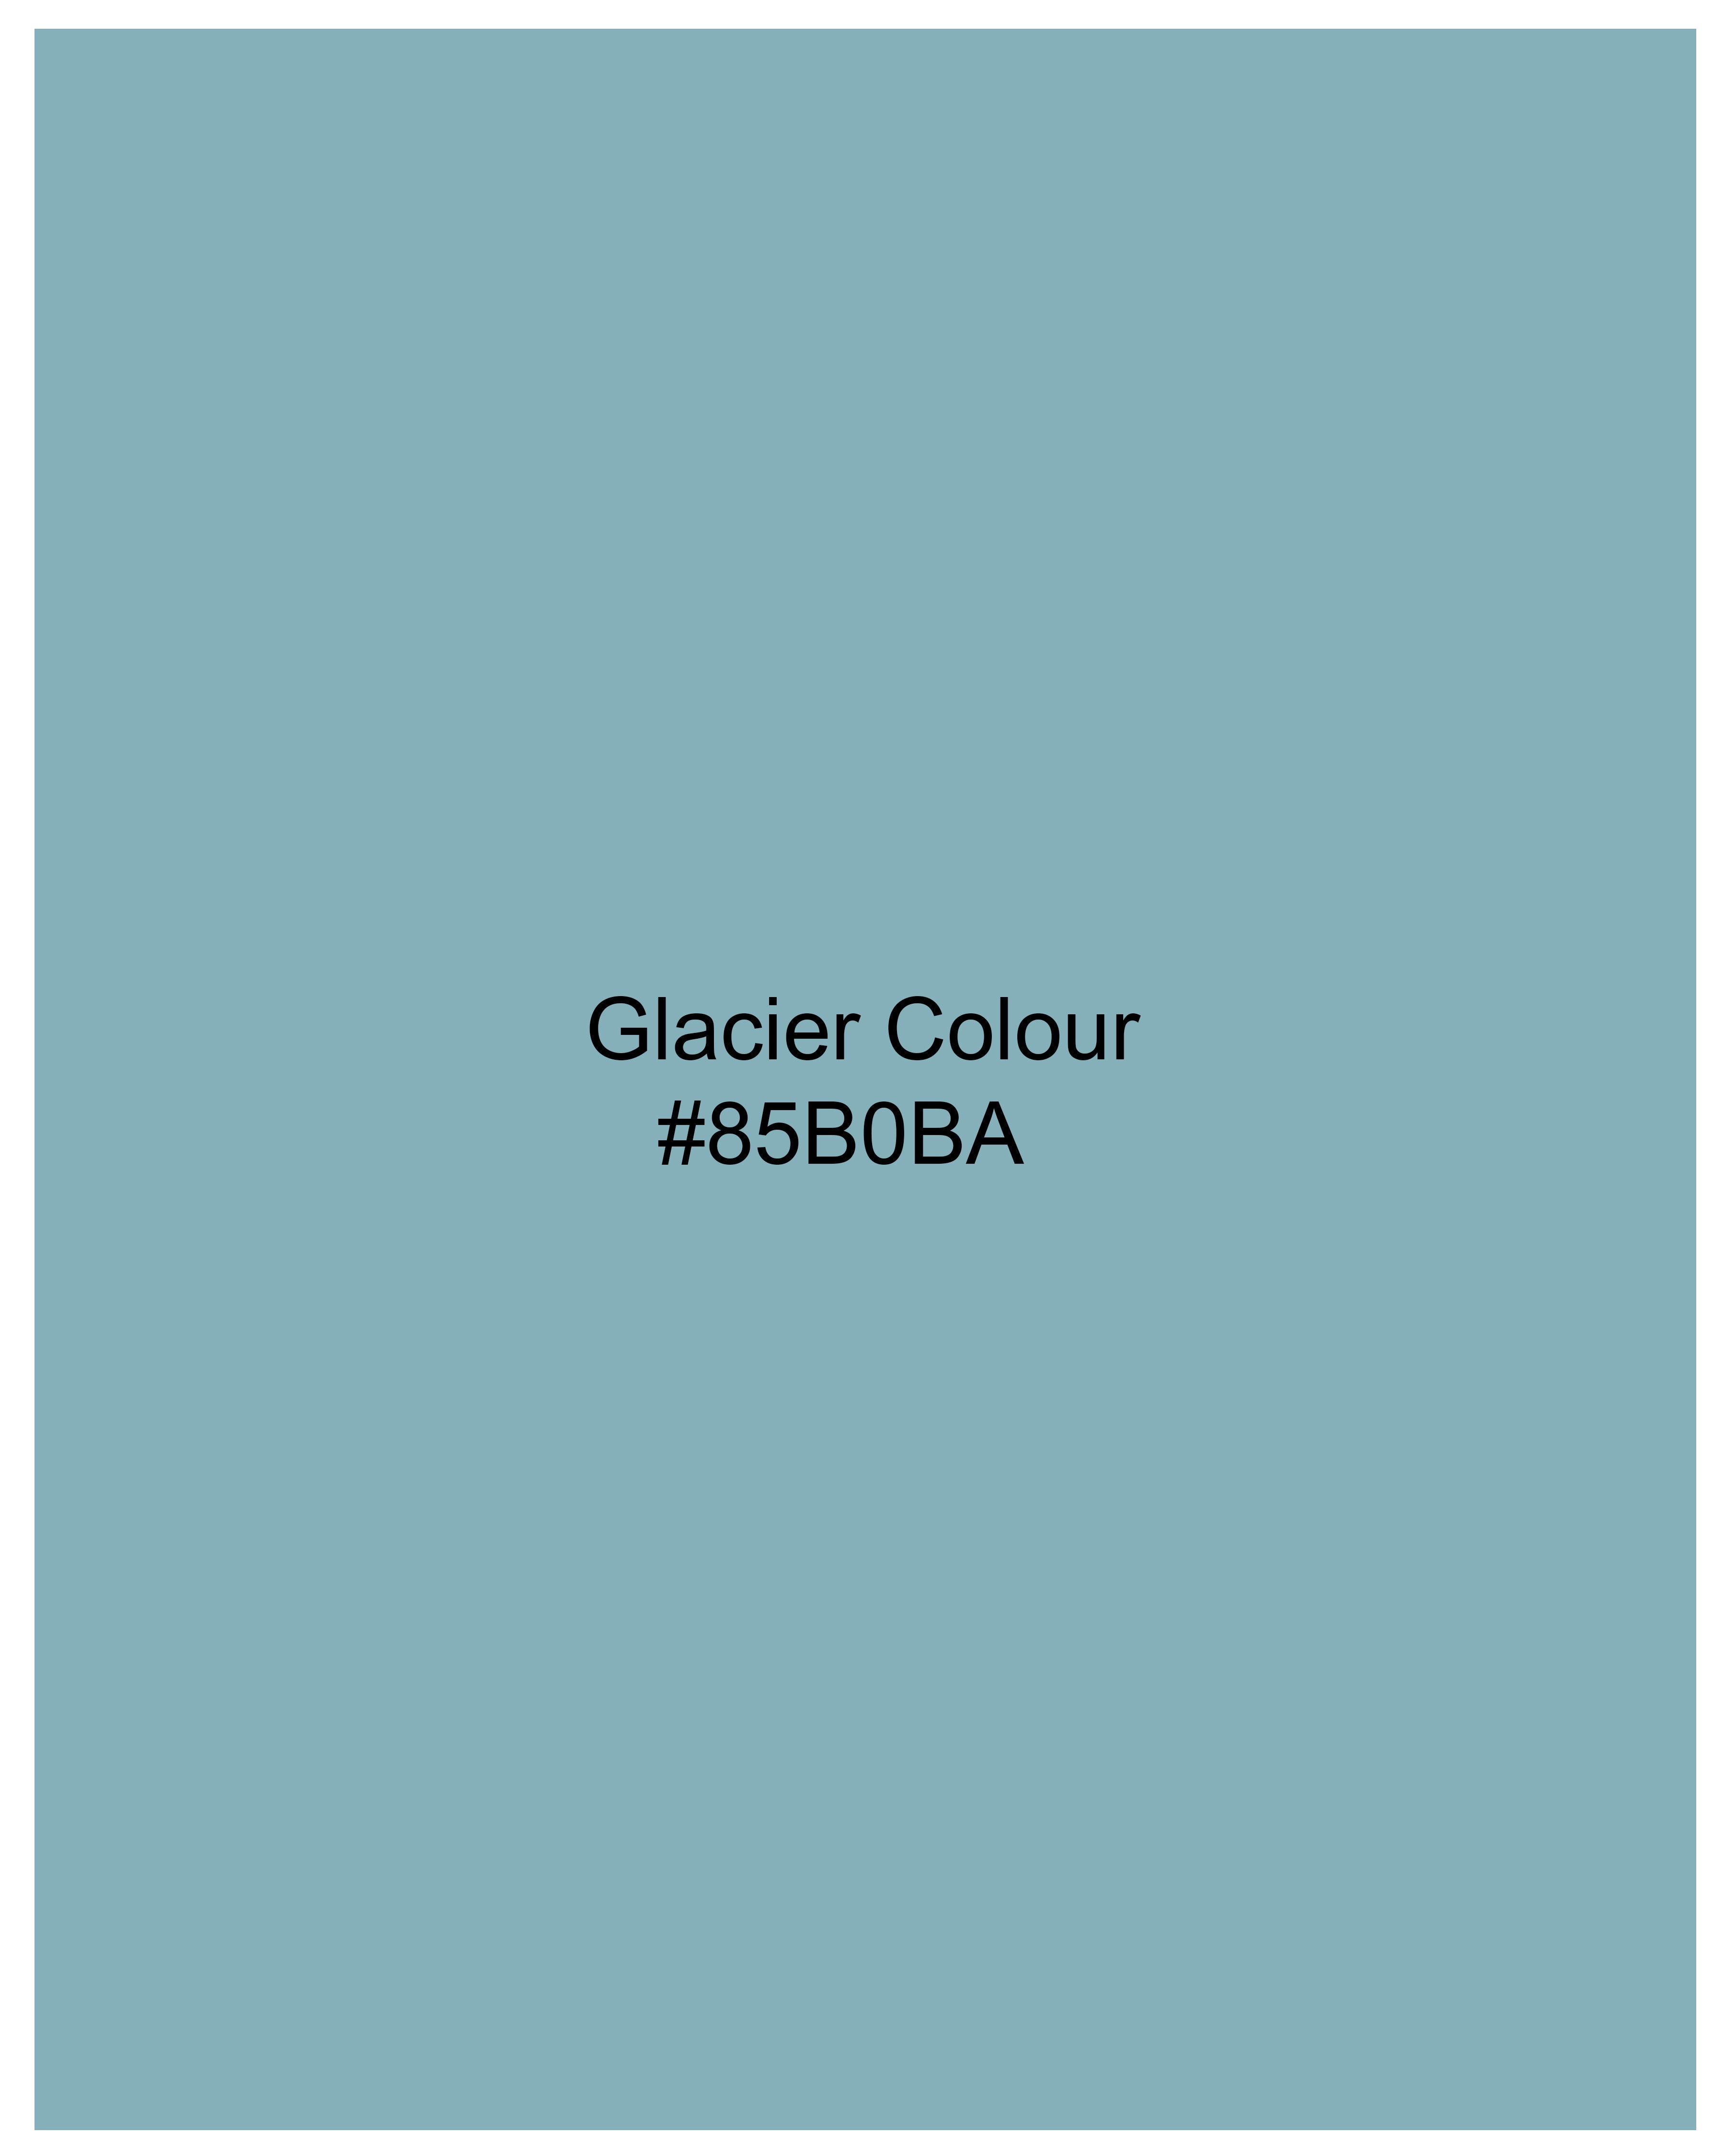  Glacier Blue Super Soft Premium Cotton Shirt 8863-BLK-38, 8863-BLK-H-38,  8863-BLK-39,  8863-BLK-H-39,  8863-BLK-40,  8863-BLK-H-40,  8863-BLK-42,  8863-BLK-H-42,  8863-BLK-44,  8863-BLK-H-44,  8863-BLK-46,  8863-BLK-H-46,  8863-BLK-48,  8863-BLK-H-48,  8863-BLK-50,  8863-BLK-H-50,  8863-BLK-52,  8863-BLK-H-52